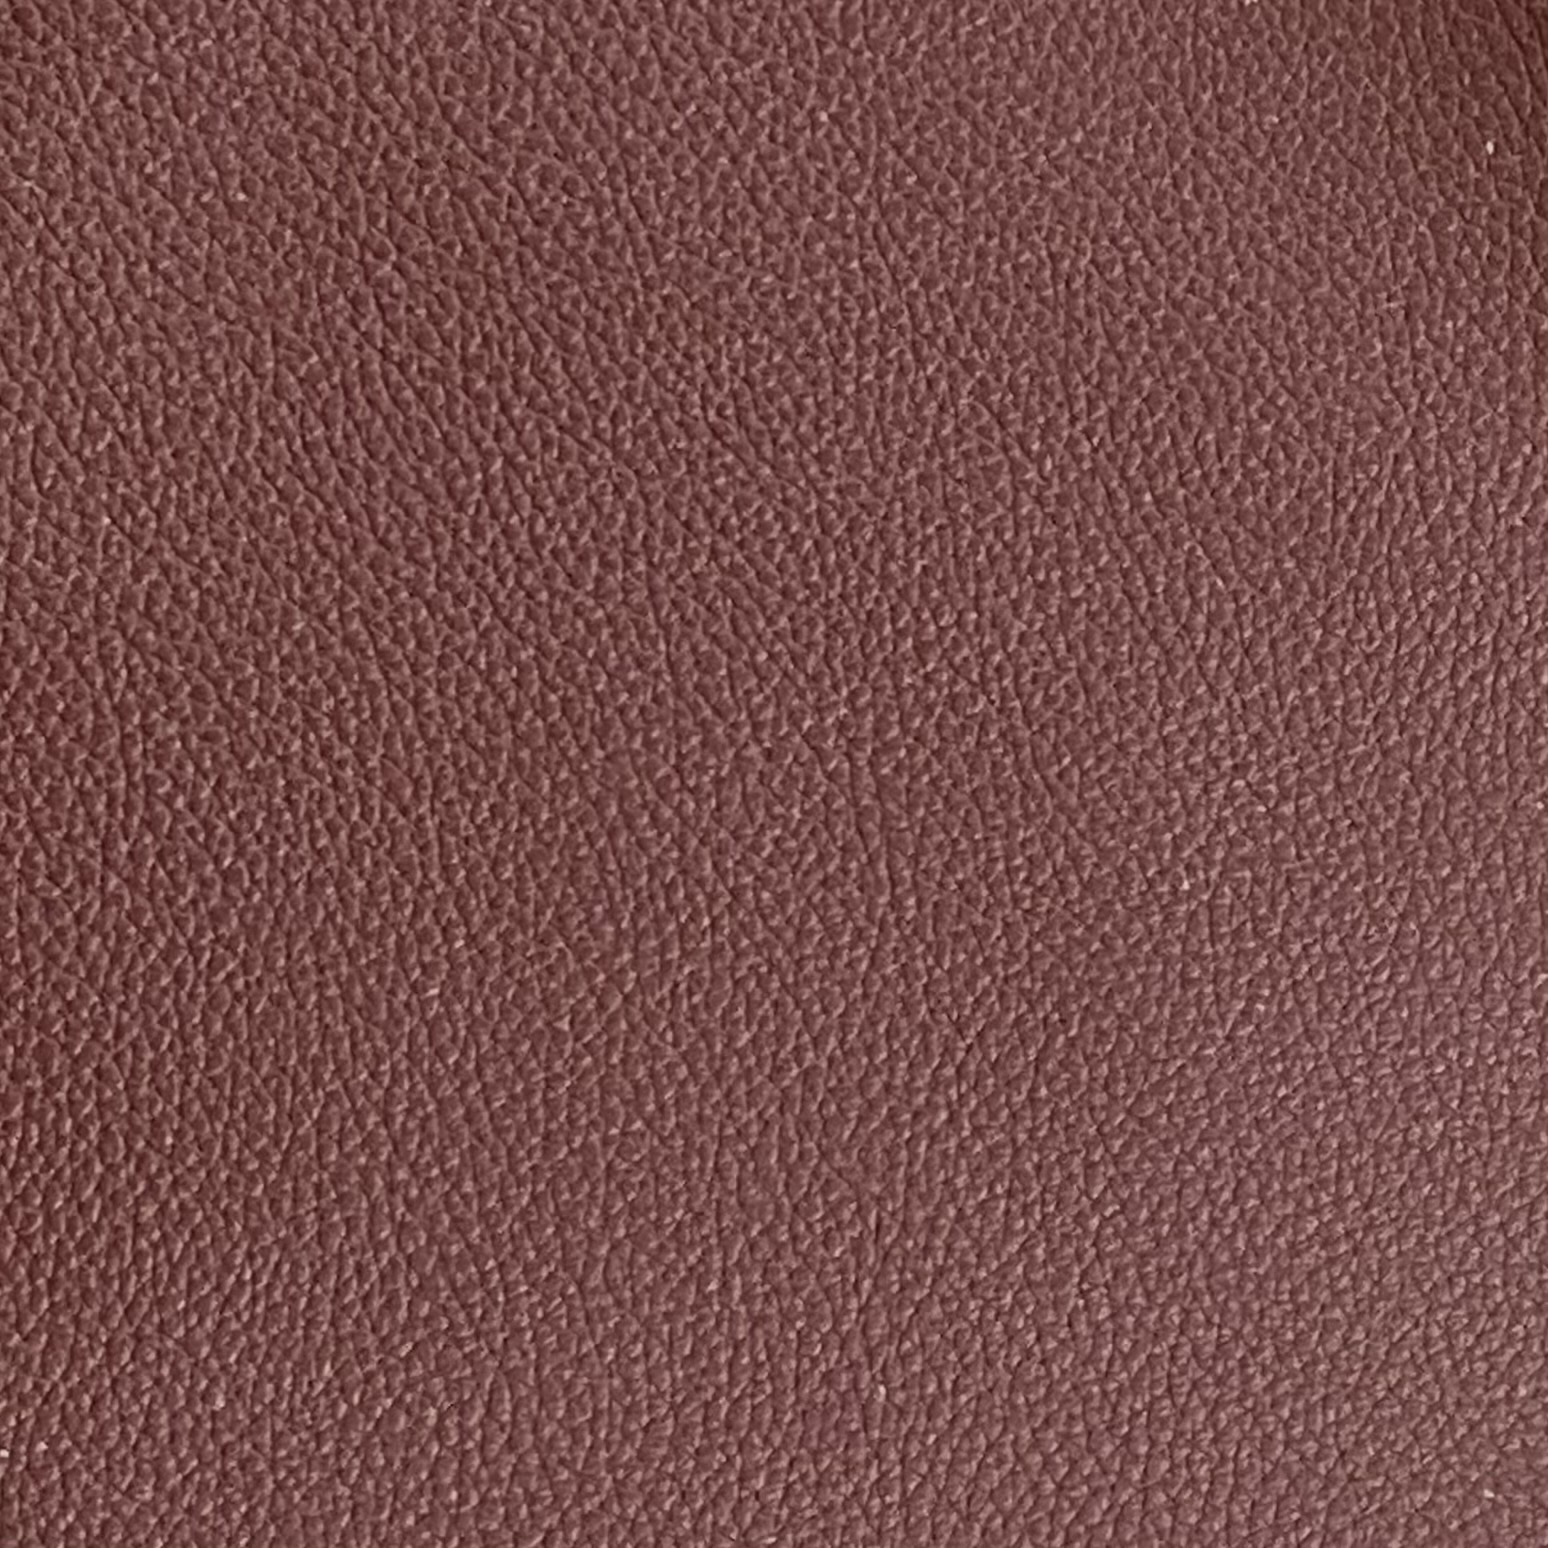 Leather Product: AV_9506